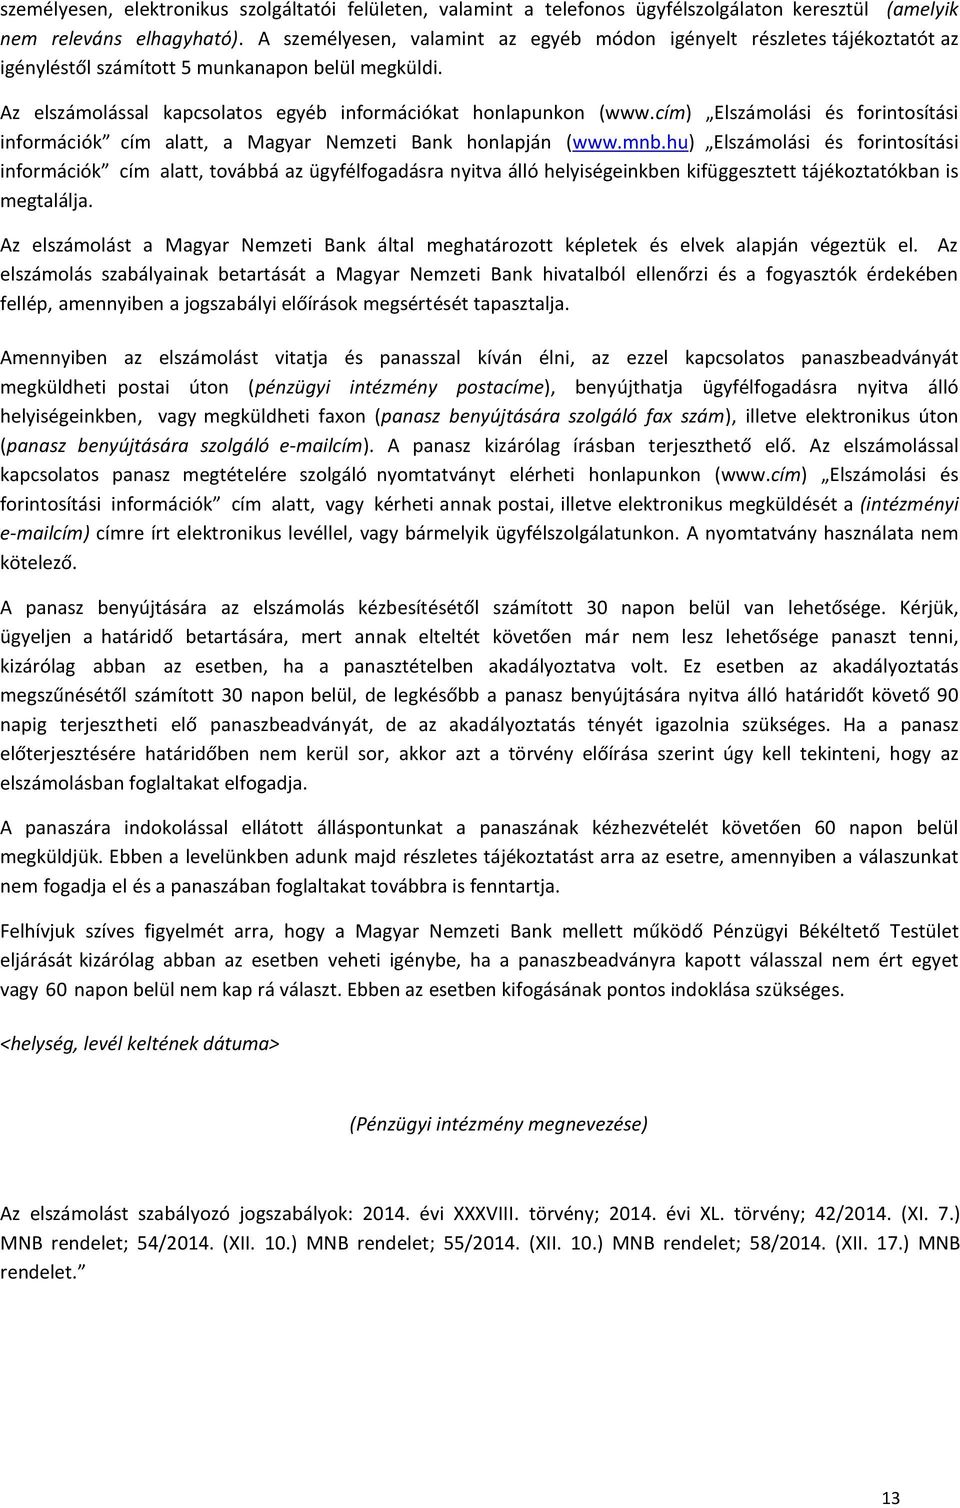 cím) Elszámolási és forintosítási információk cím alatt, a Magyar Nemzeti Bank honlapján (www.mnb.